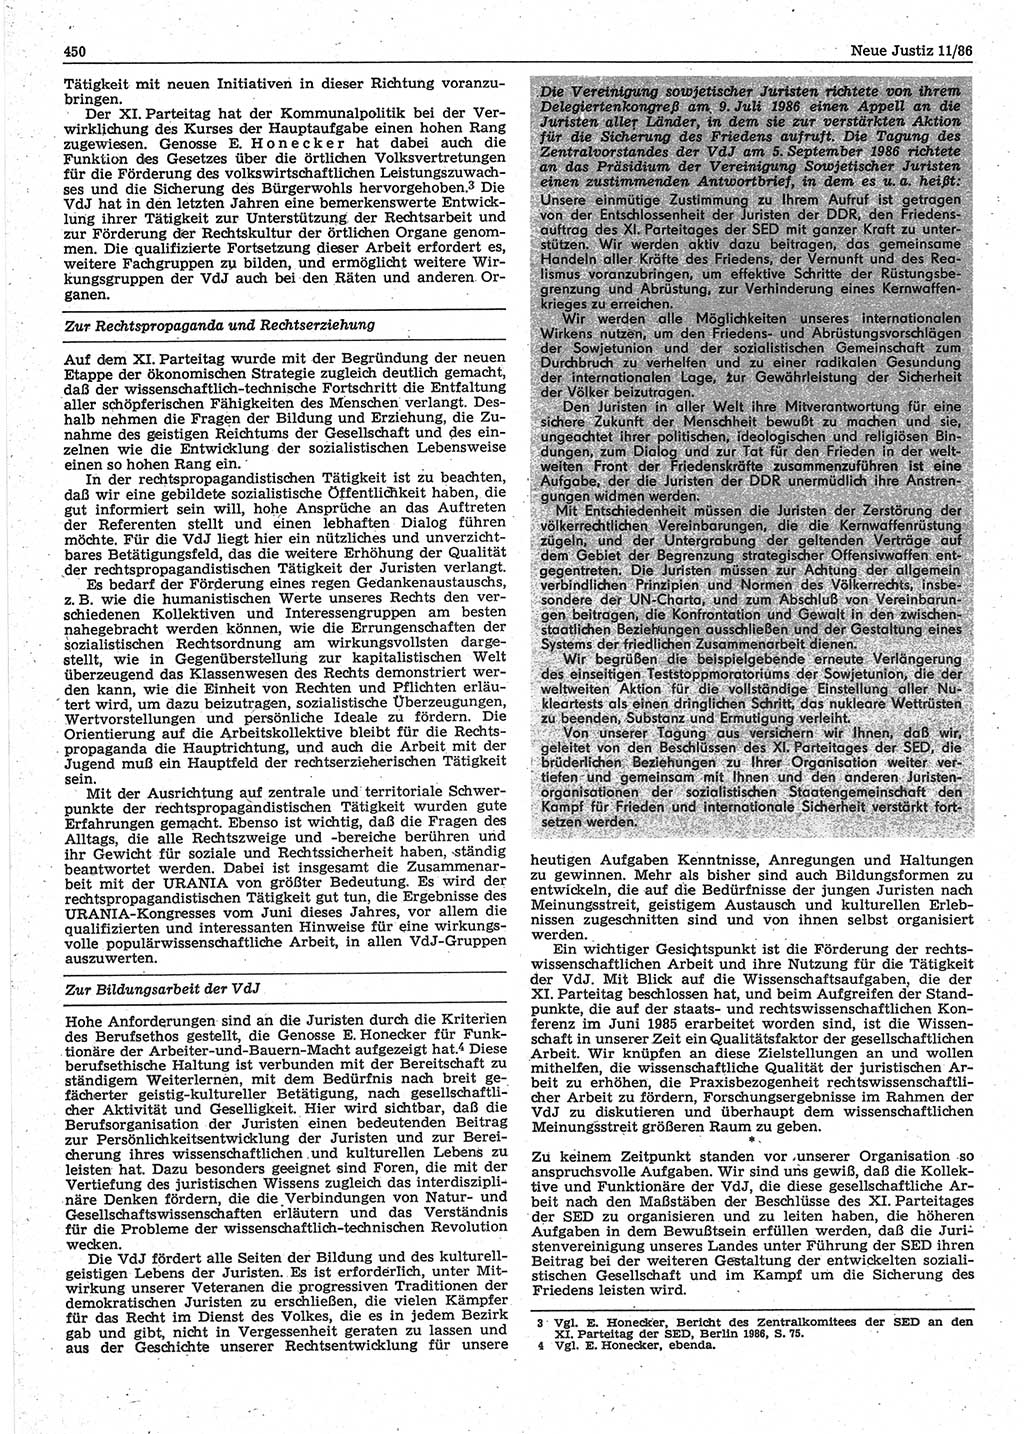 Neue Justiz (NJ), Zeitschrift für sozialistisches Recht und Gesetzlichkeit [Deutsche Demokratische Republik (DDR)], 40. Jahrgang 1986, Seite 450 (NJ DDR 1986, S. 450)